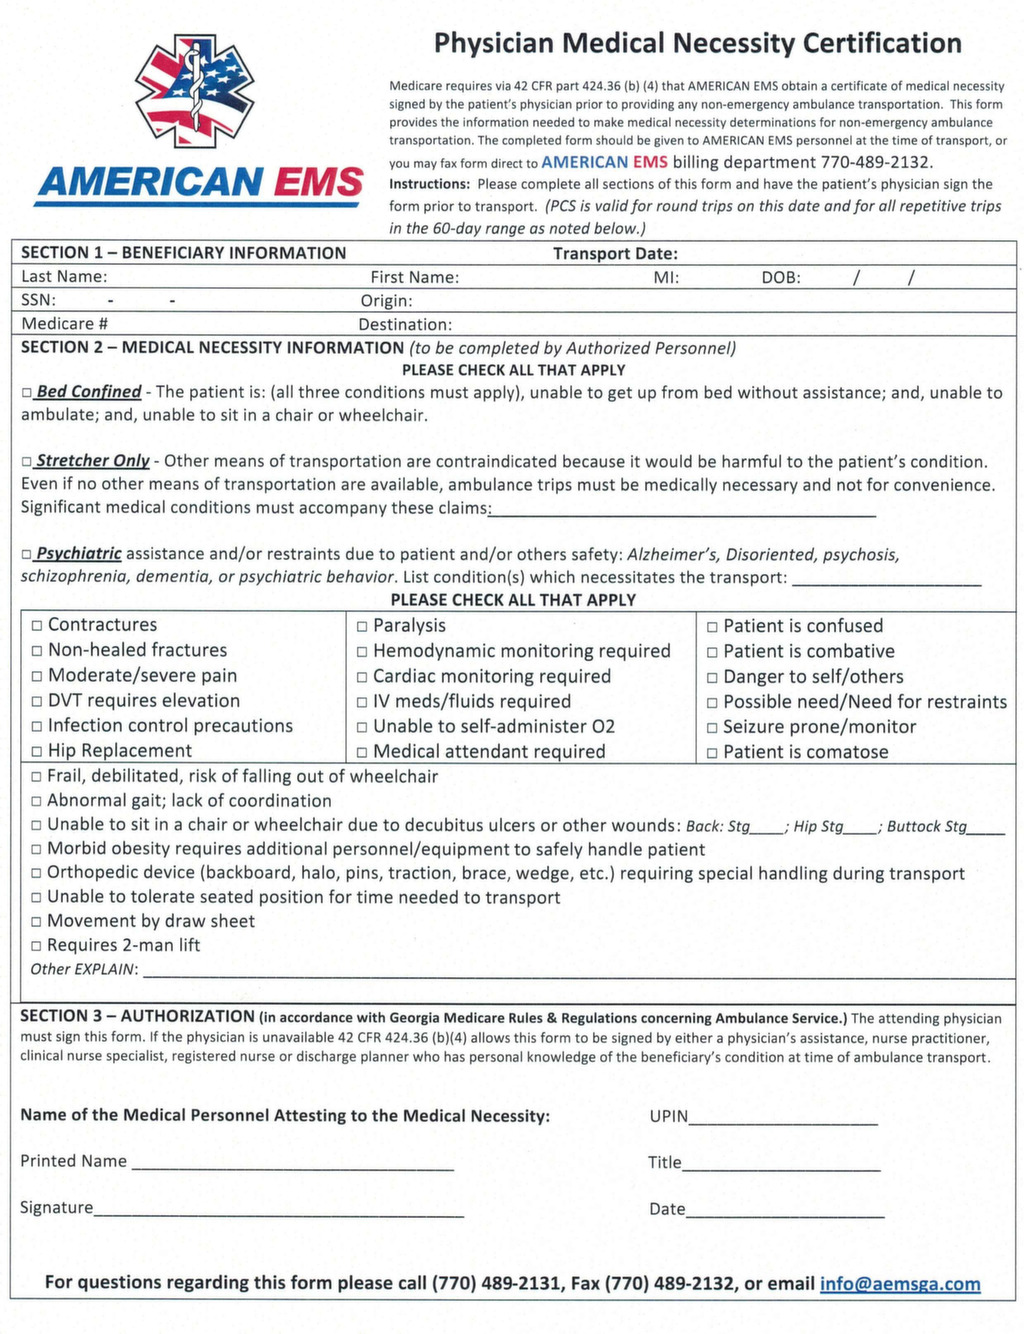 Medicare Medical Necessity Form For Ambulance Transport Transport